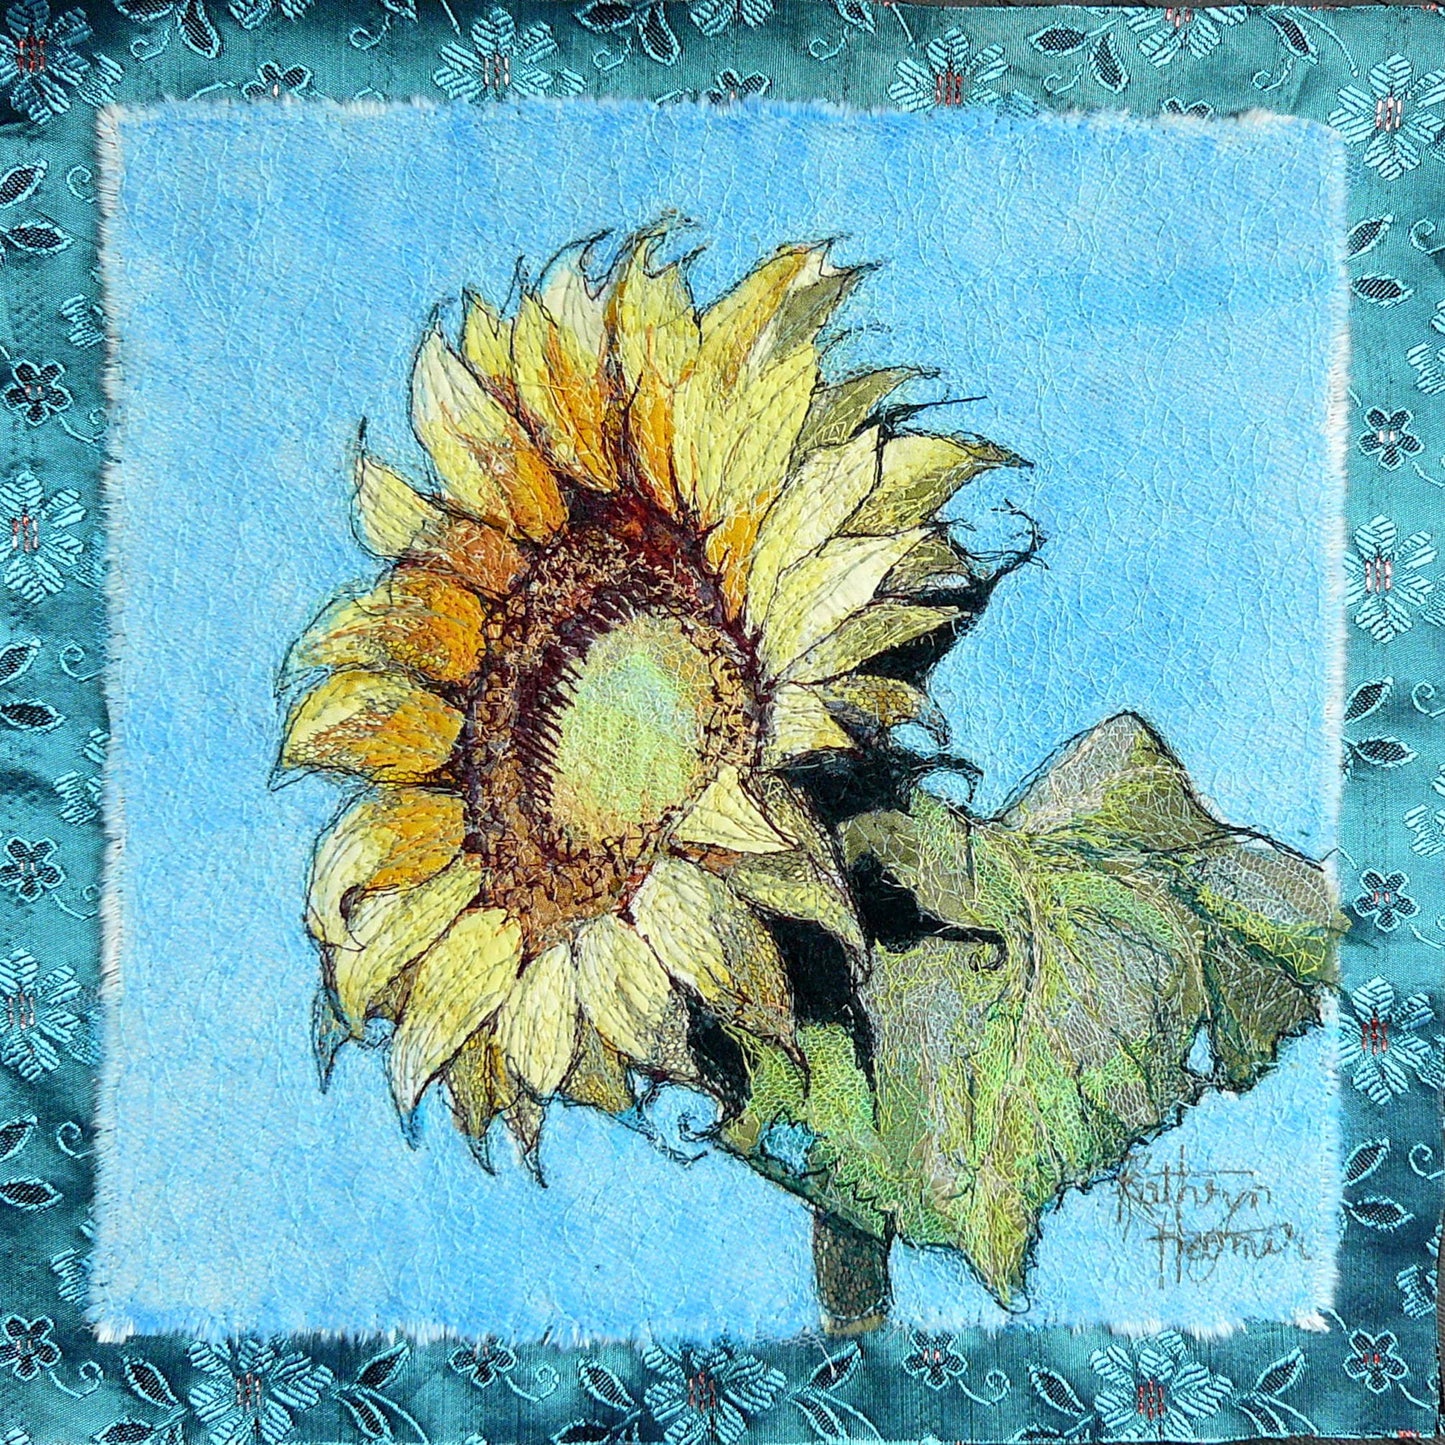 Sunflower Kit